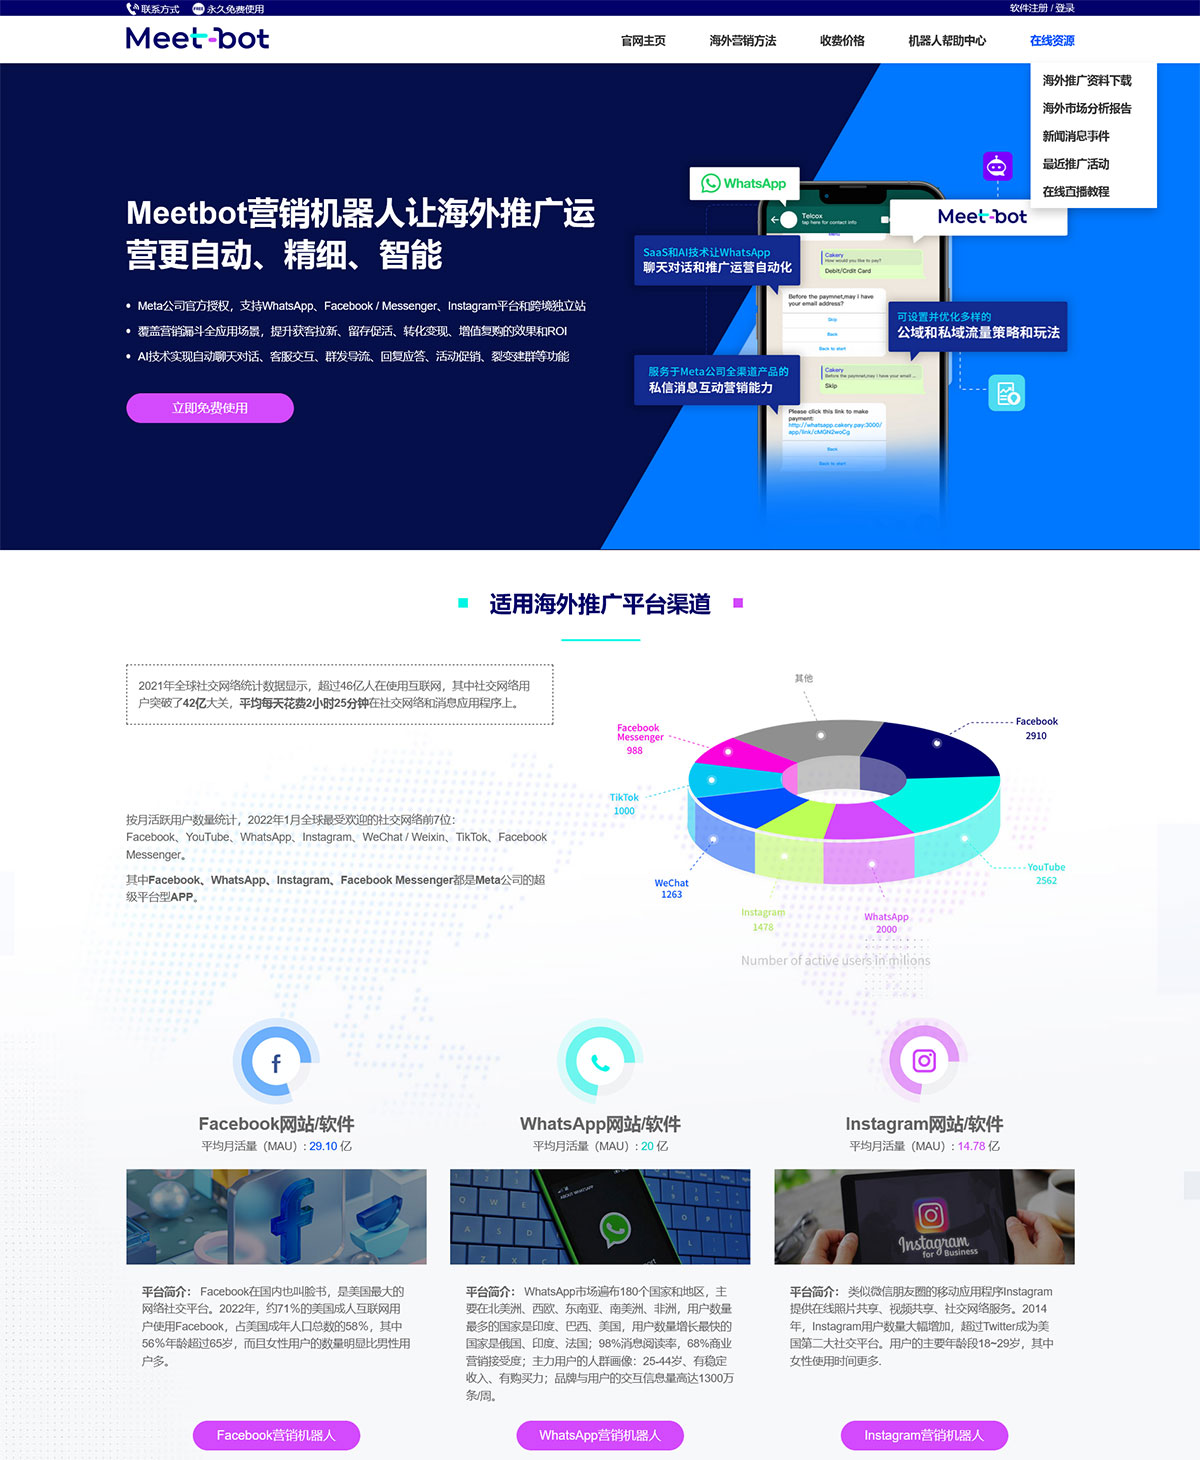 Meetbot智能营销机器人软件的最新版本中文官网首页缩略图